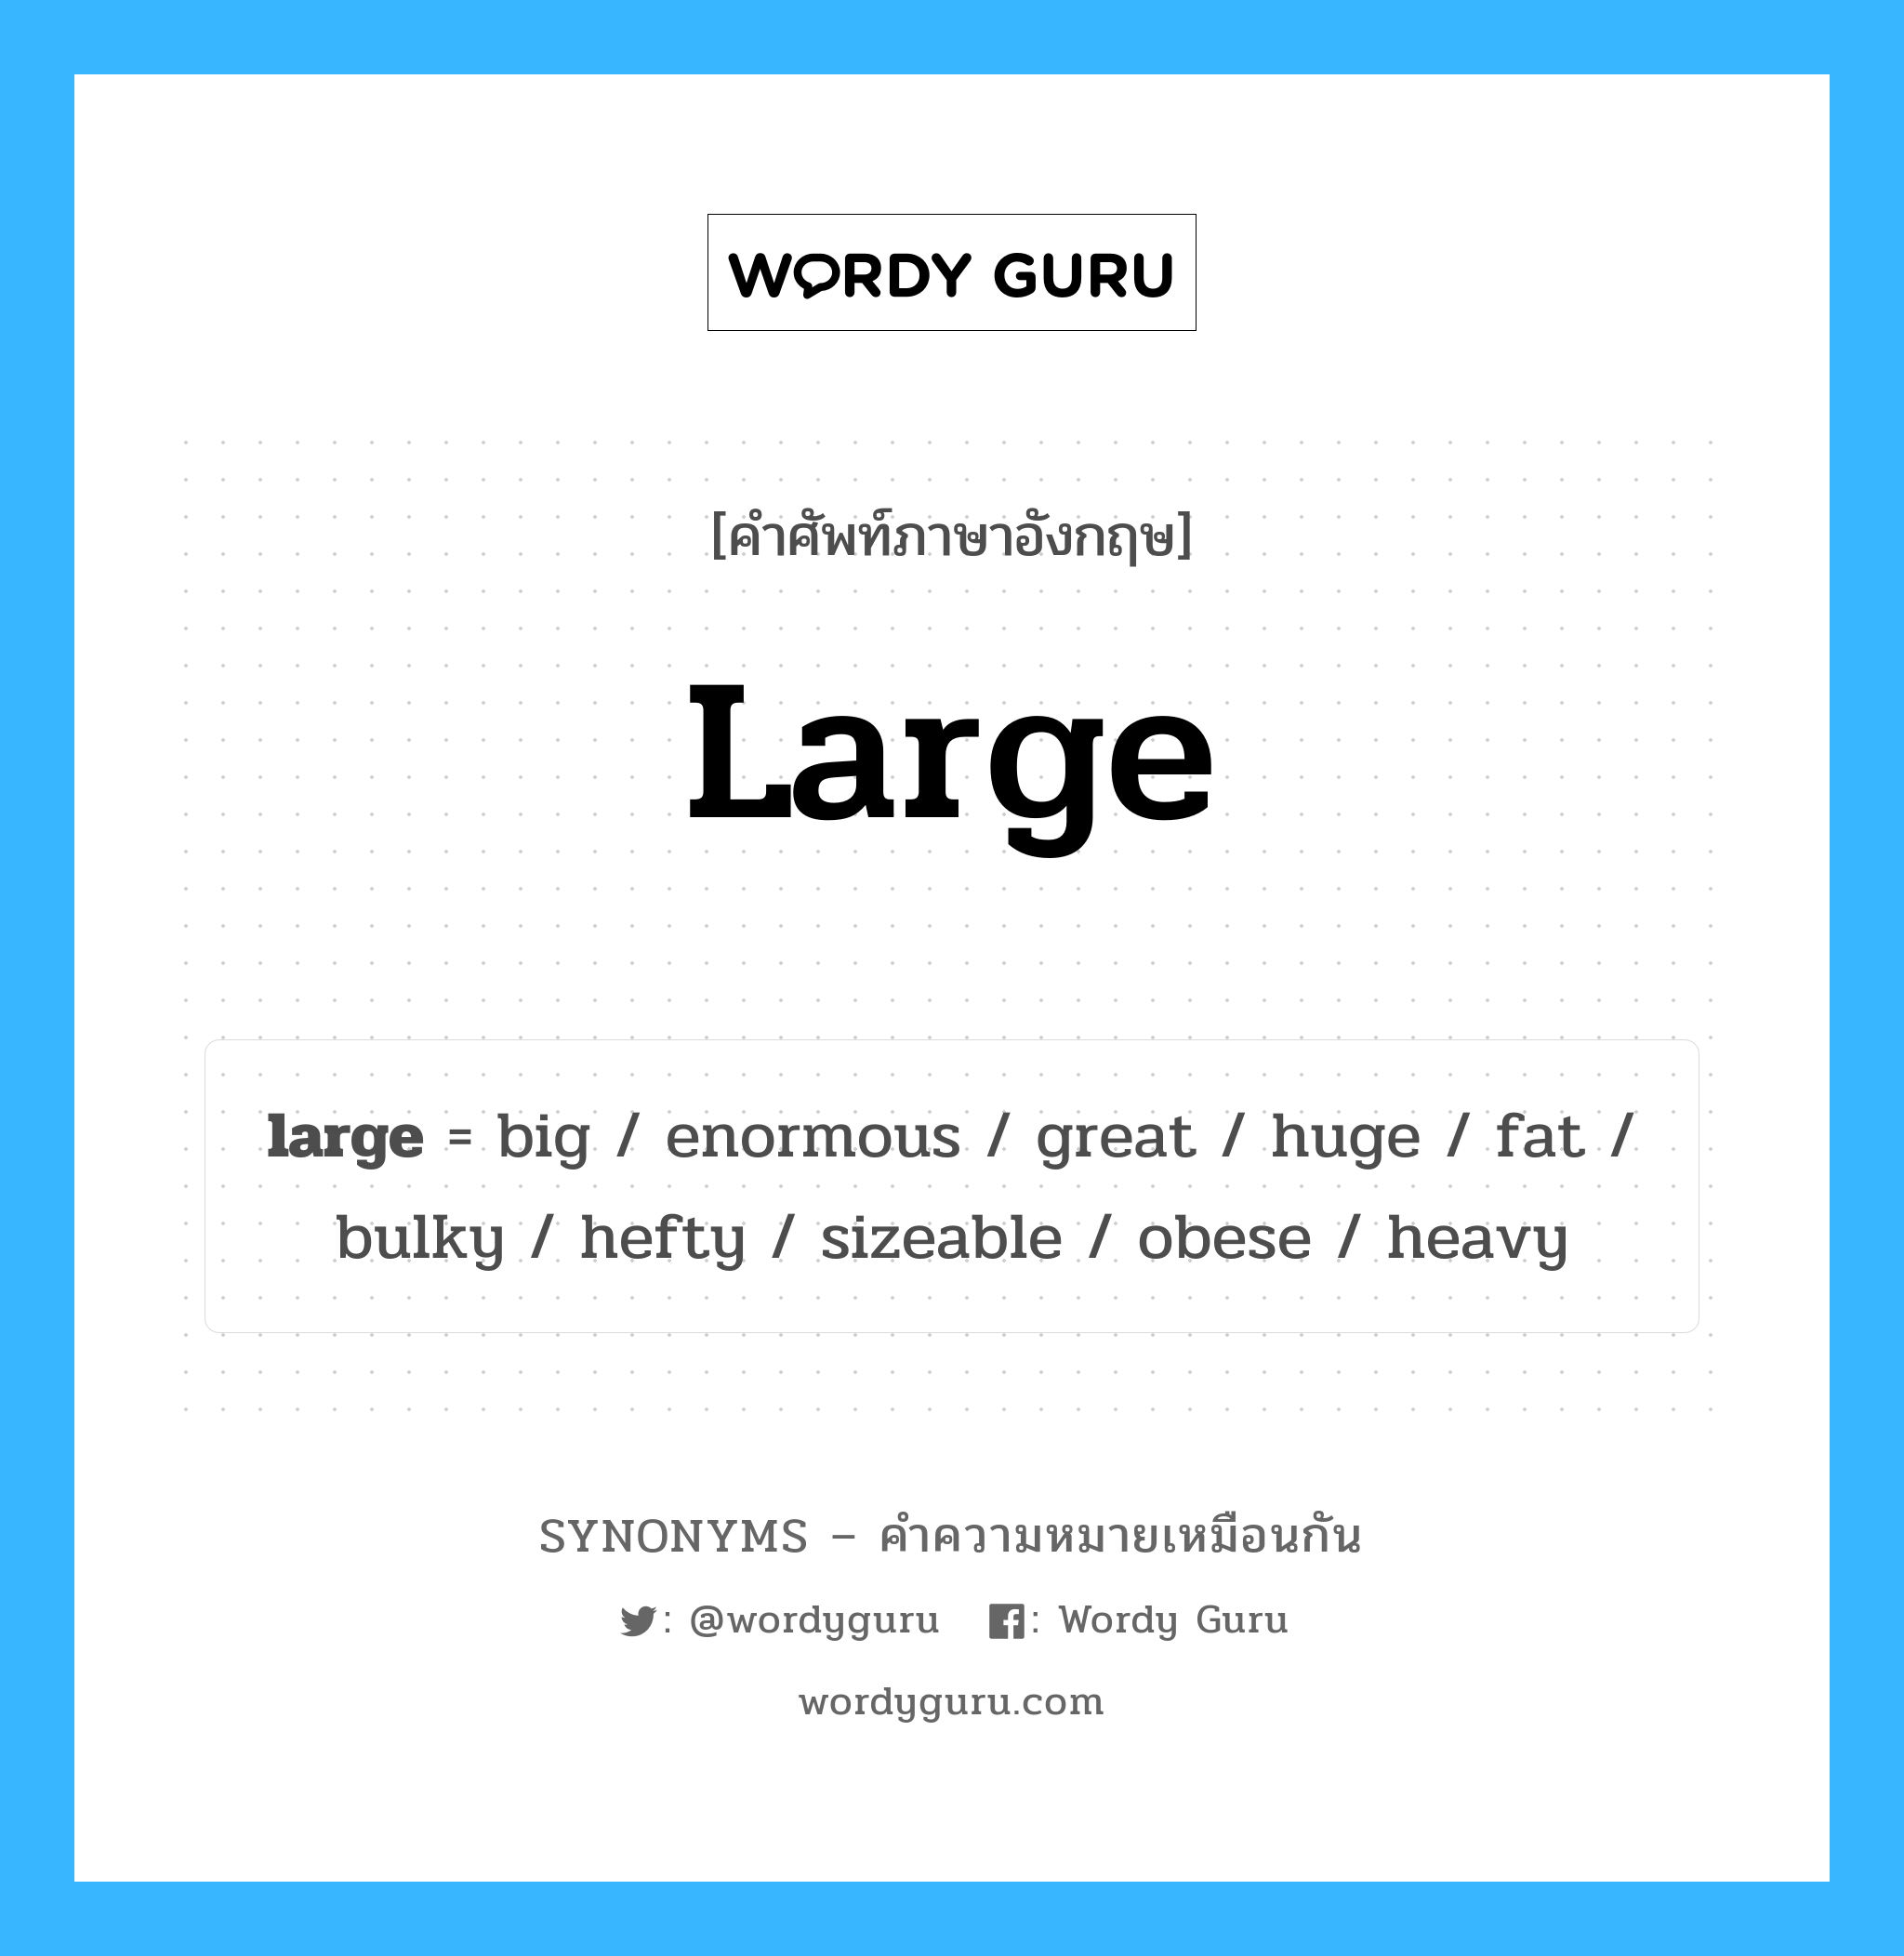 hefty เป็นหนึ่งใน large และมีคำอื่น ๆ อีกดังนี้, คำศัพท์ภาษาอังกฤษ hefty ความหมายคล้ายกันกับ large แปลว่า หนัก หมวด large